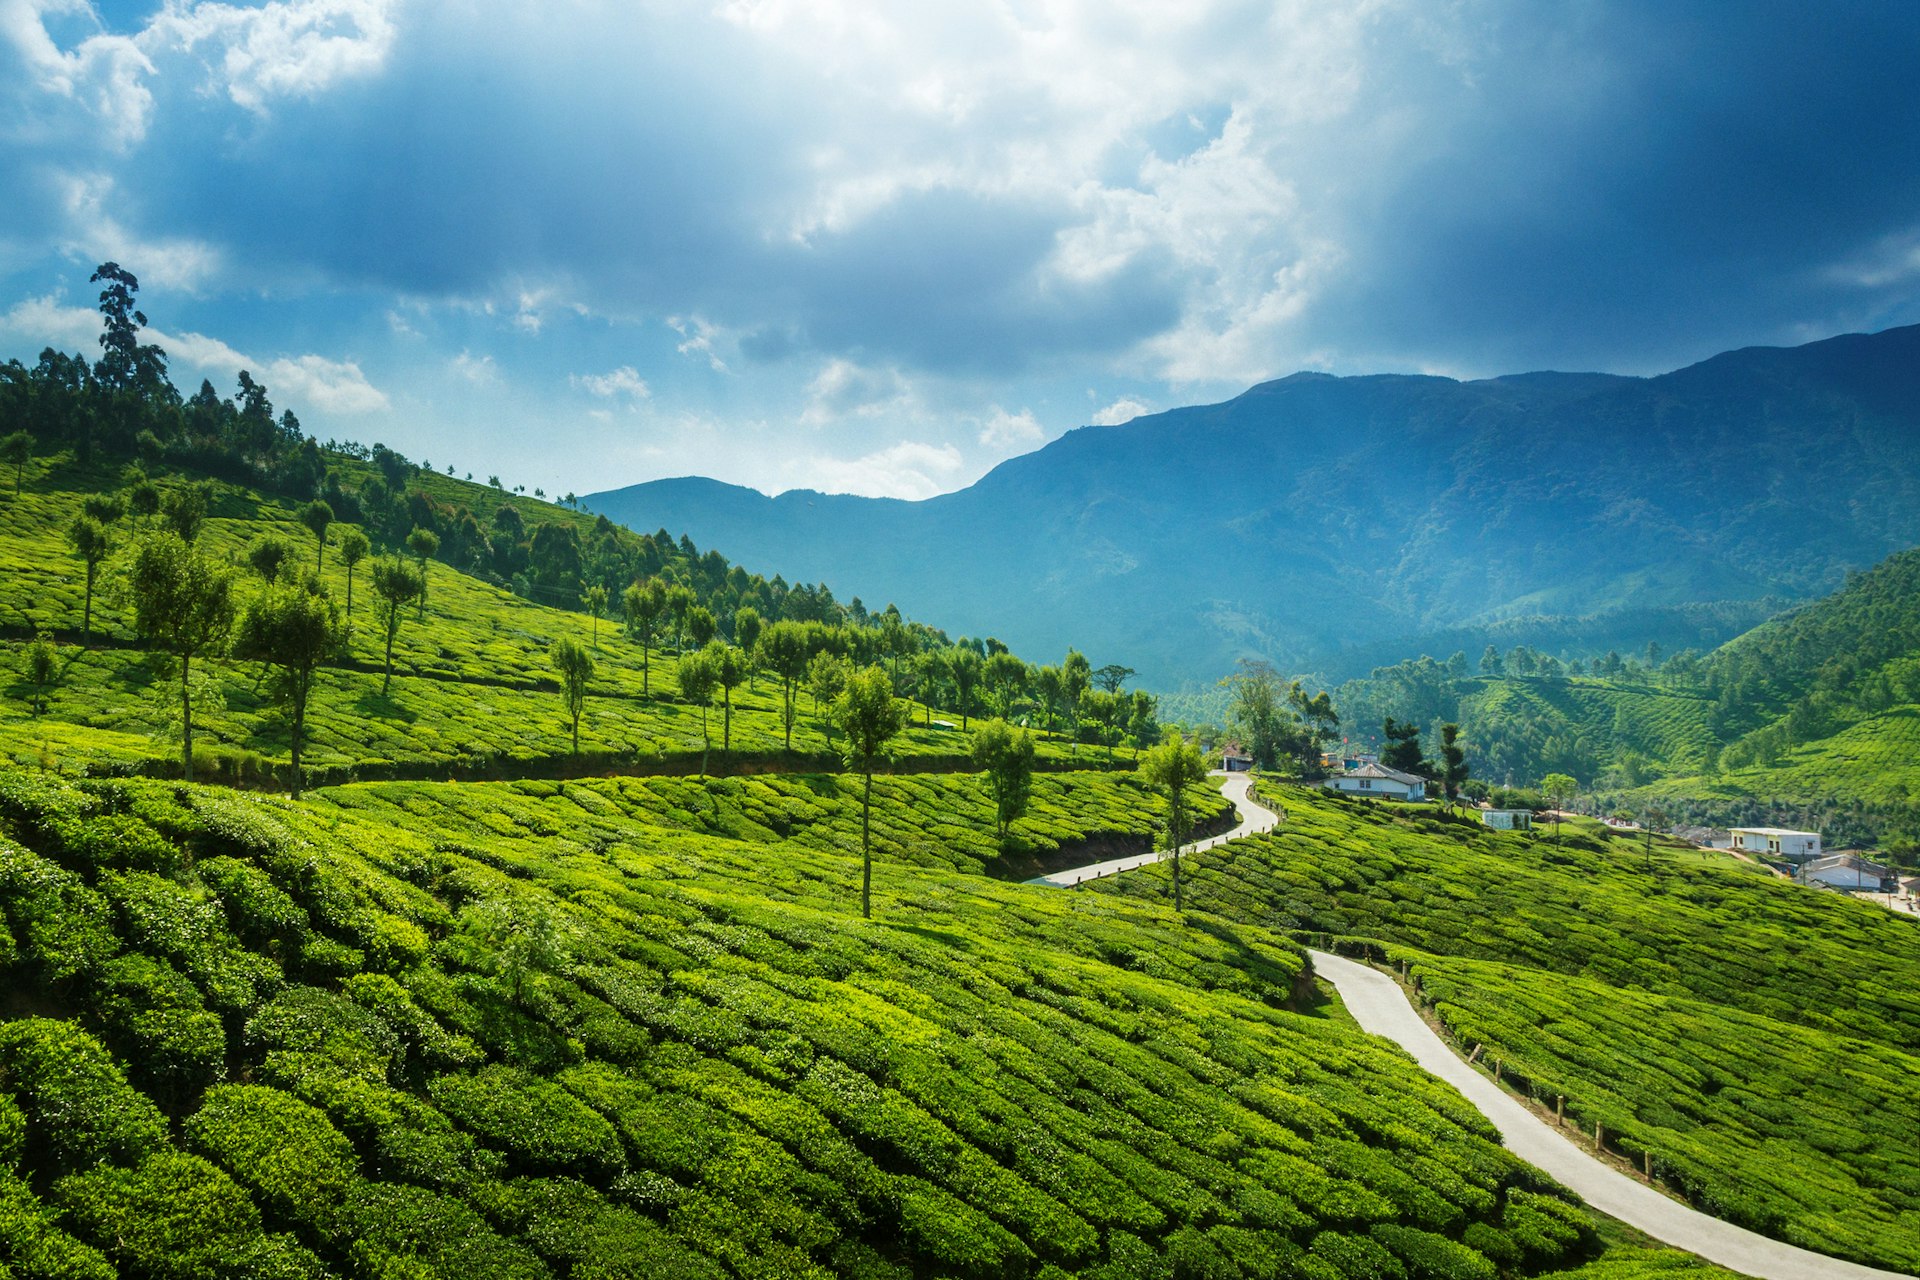 A road runs through lush green tea plantations